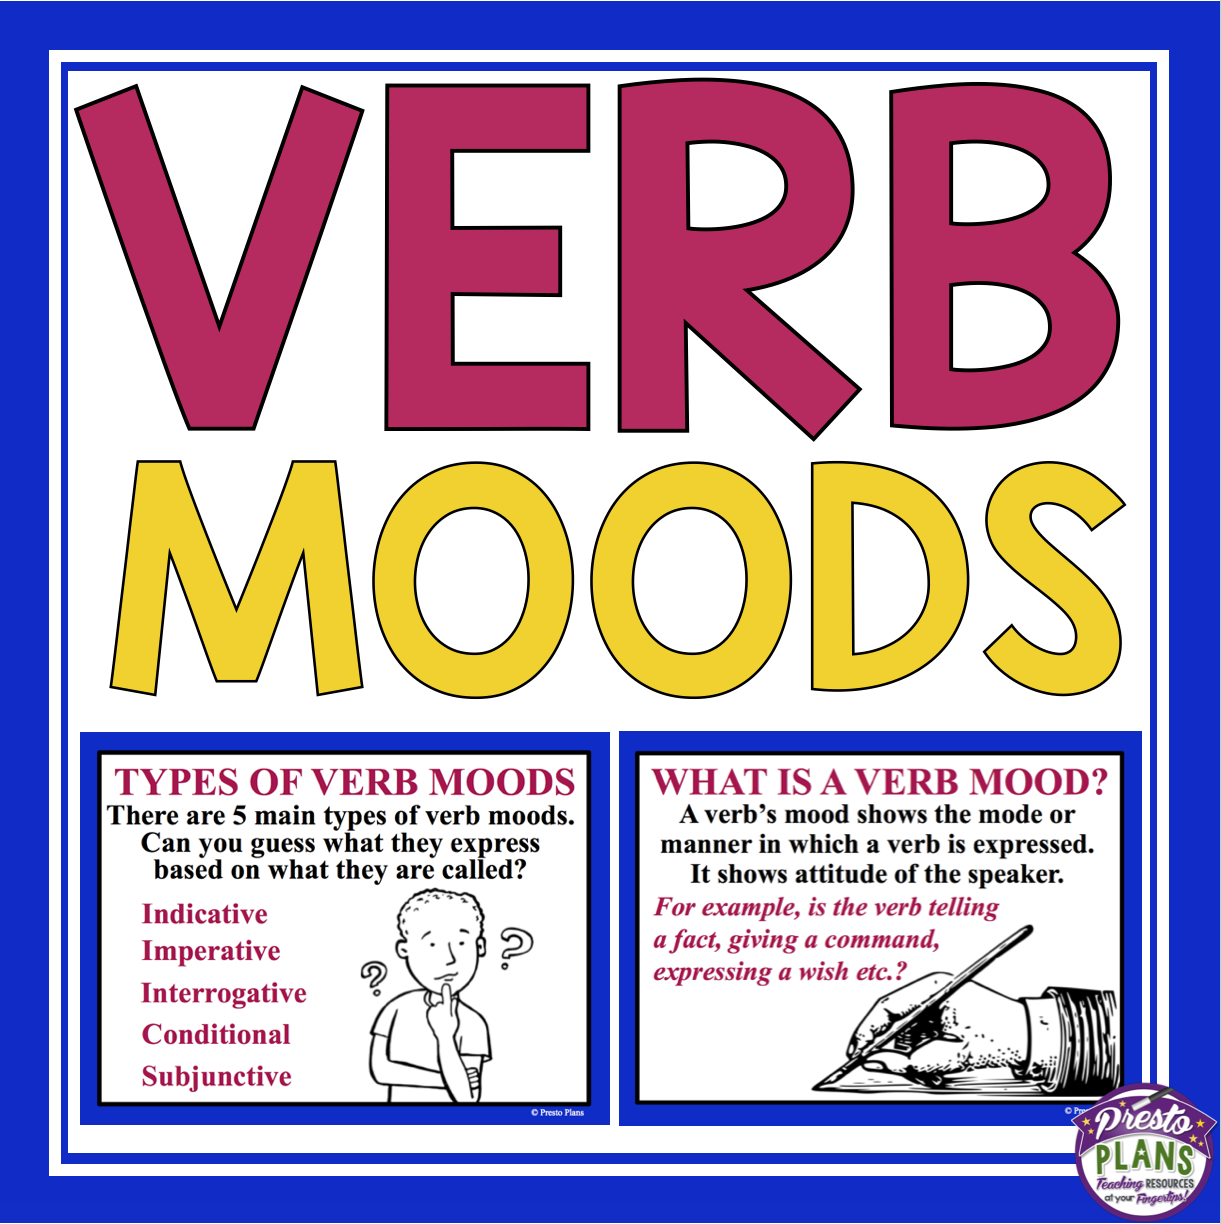 verb-moods-presto-plans